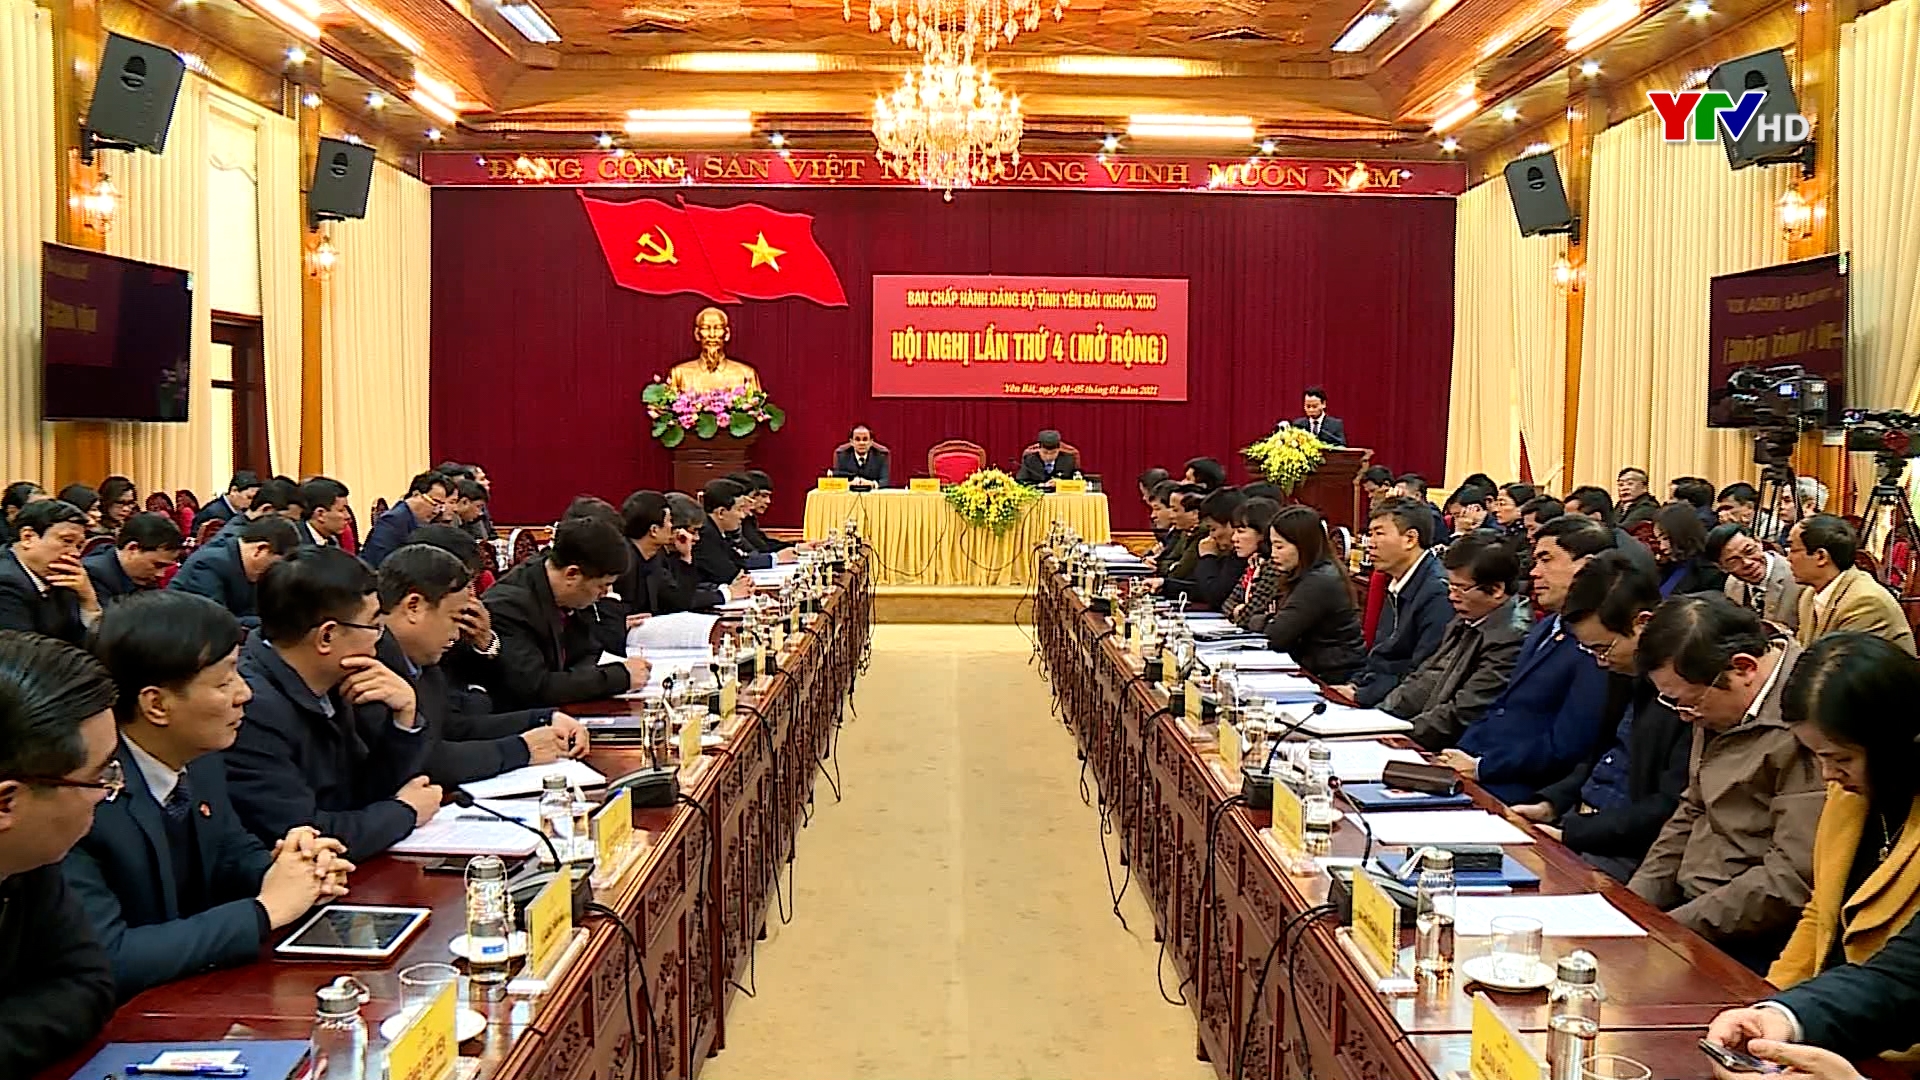 Hội nghị Ban Chấp hành Đảng bộ tỉnh Yên Bái lần thứ 4 (mở rộng) thành công tốt đẹp